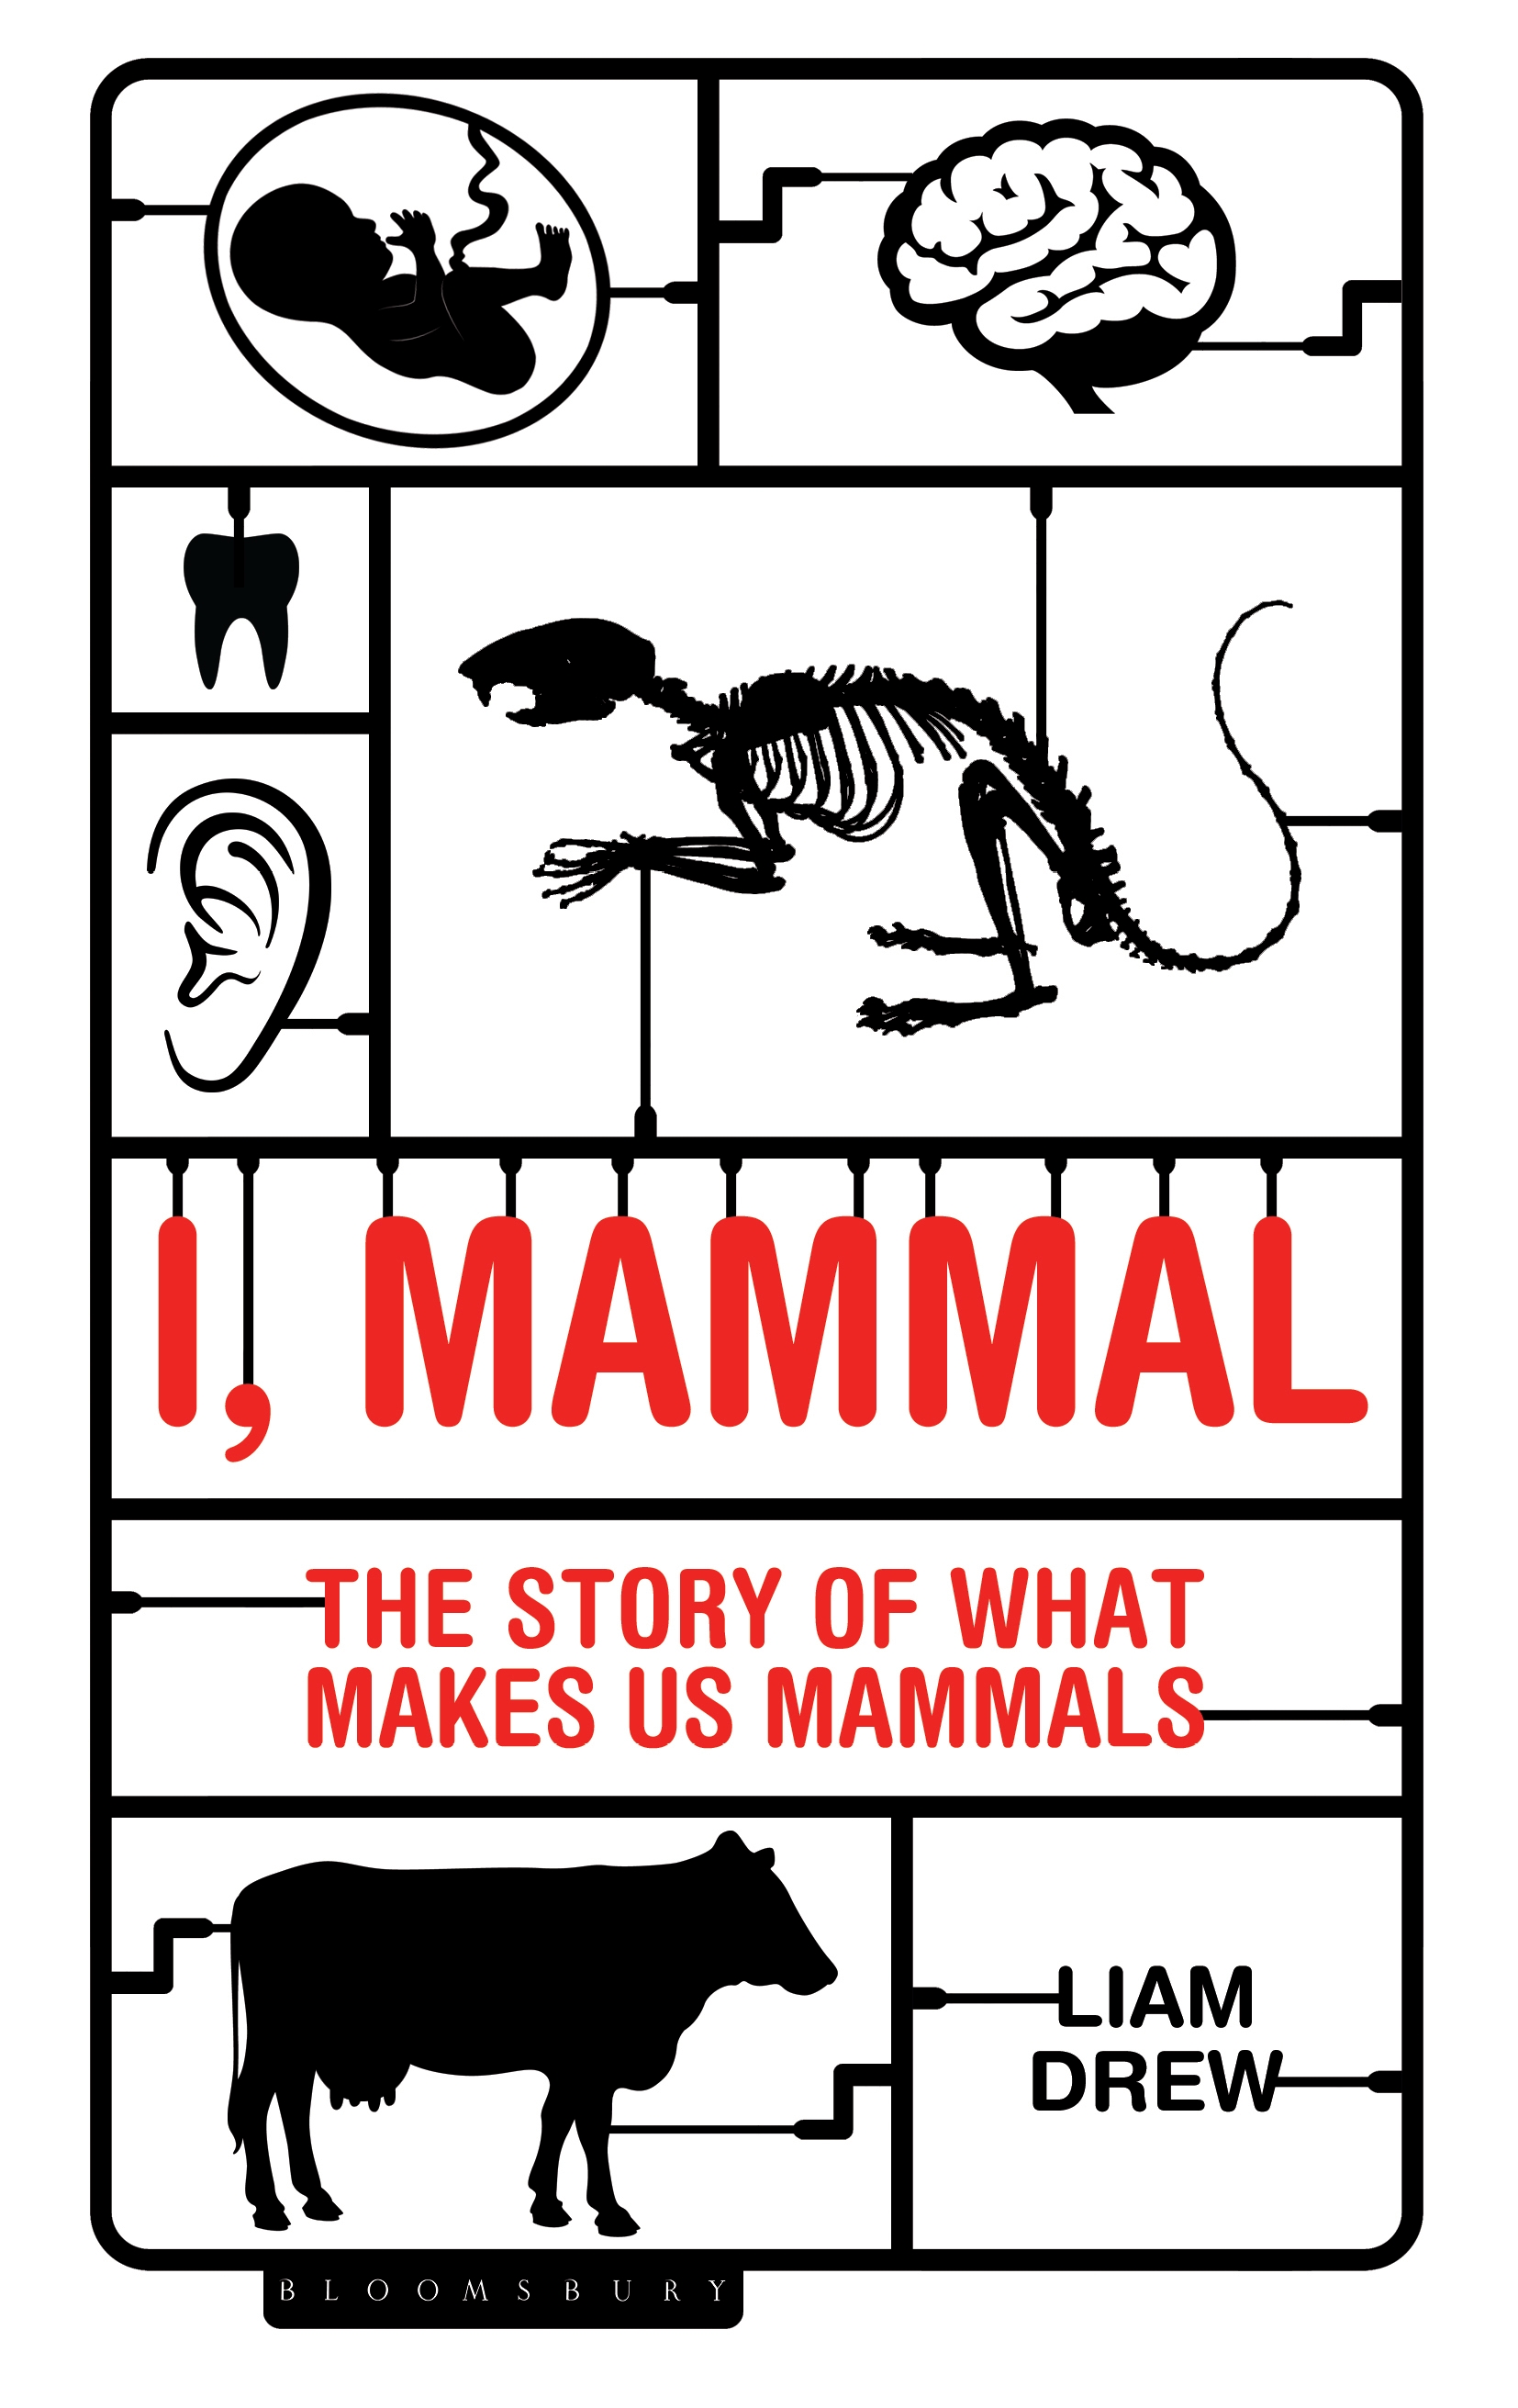 I, Mammal - 10-14.99